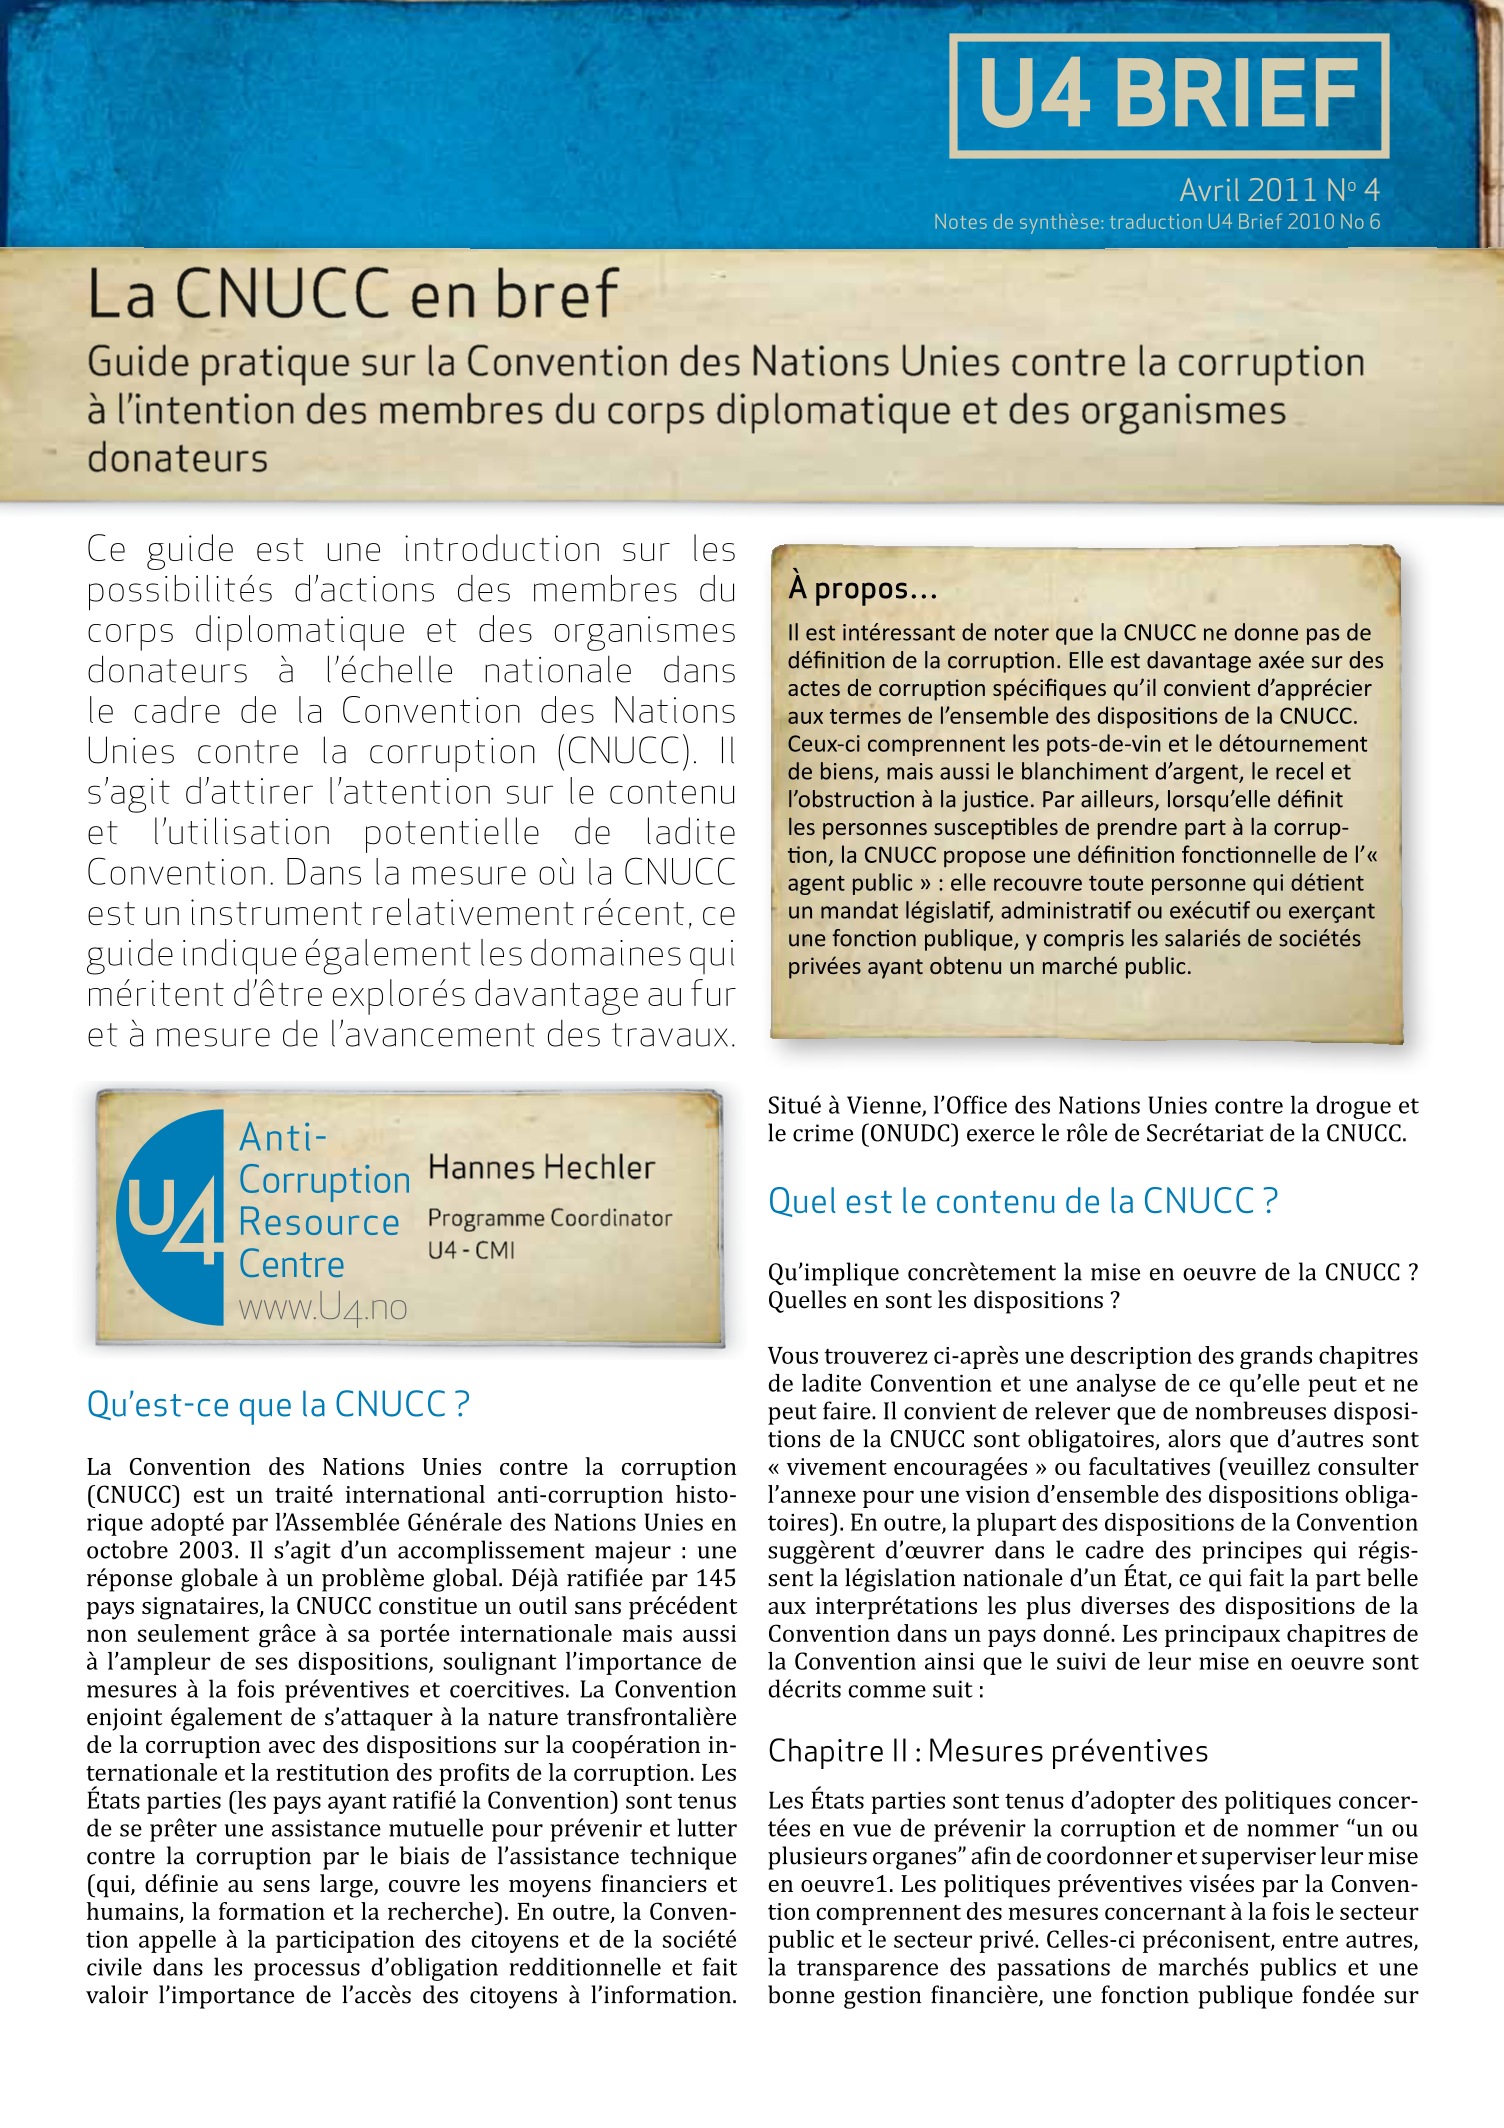 La CNUCC en bref: Guide pratique sur la Convention des Nations Unies contre la corruption  à l'intention des membres du corps diplomatique et des organismes  donateurs